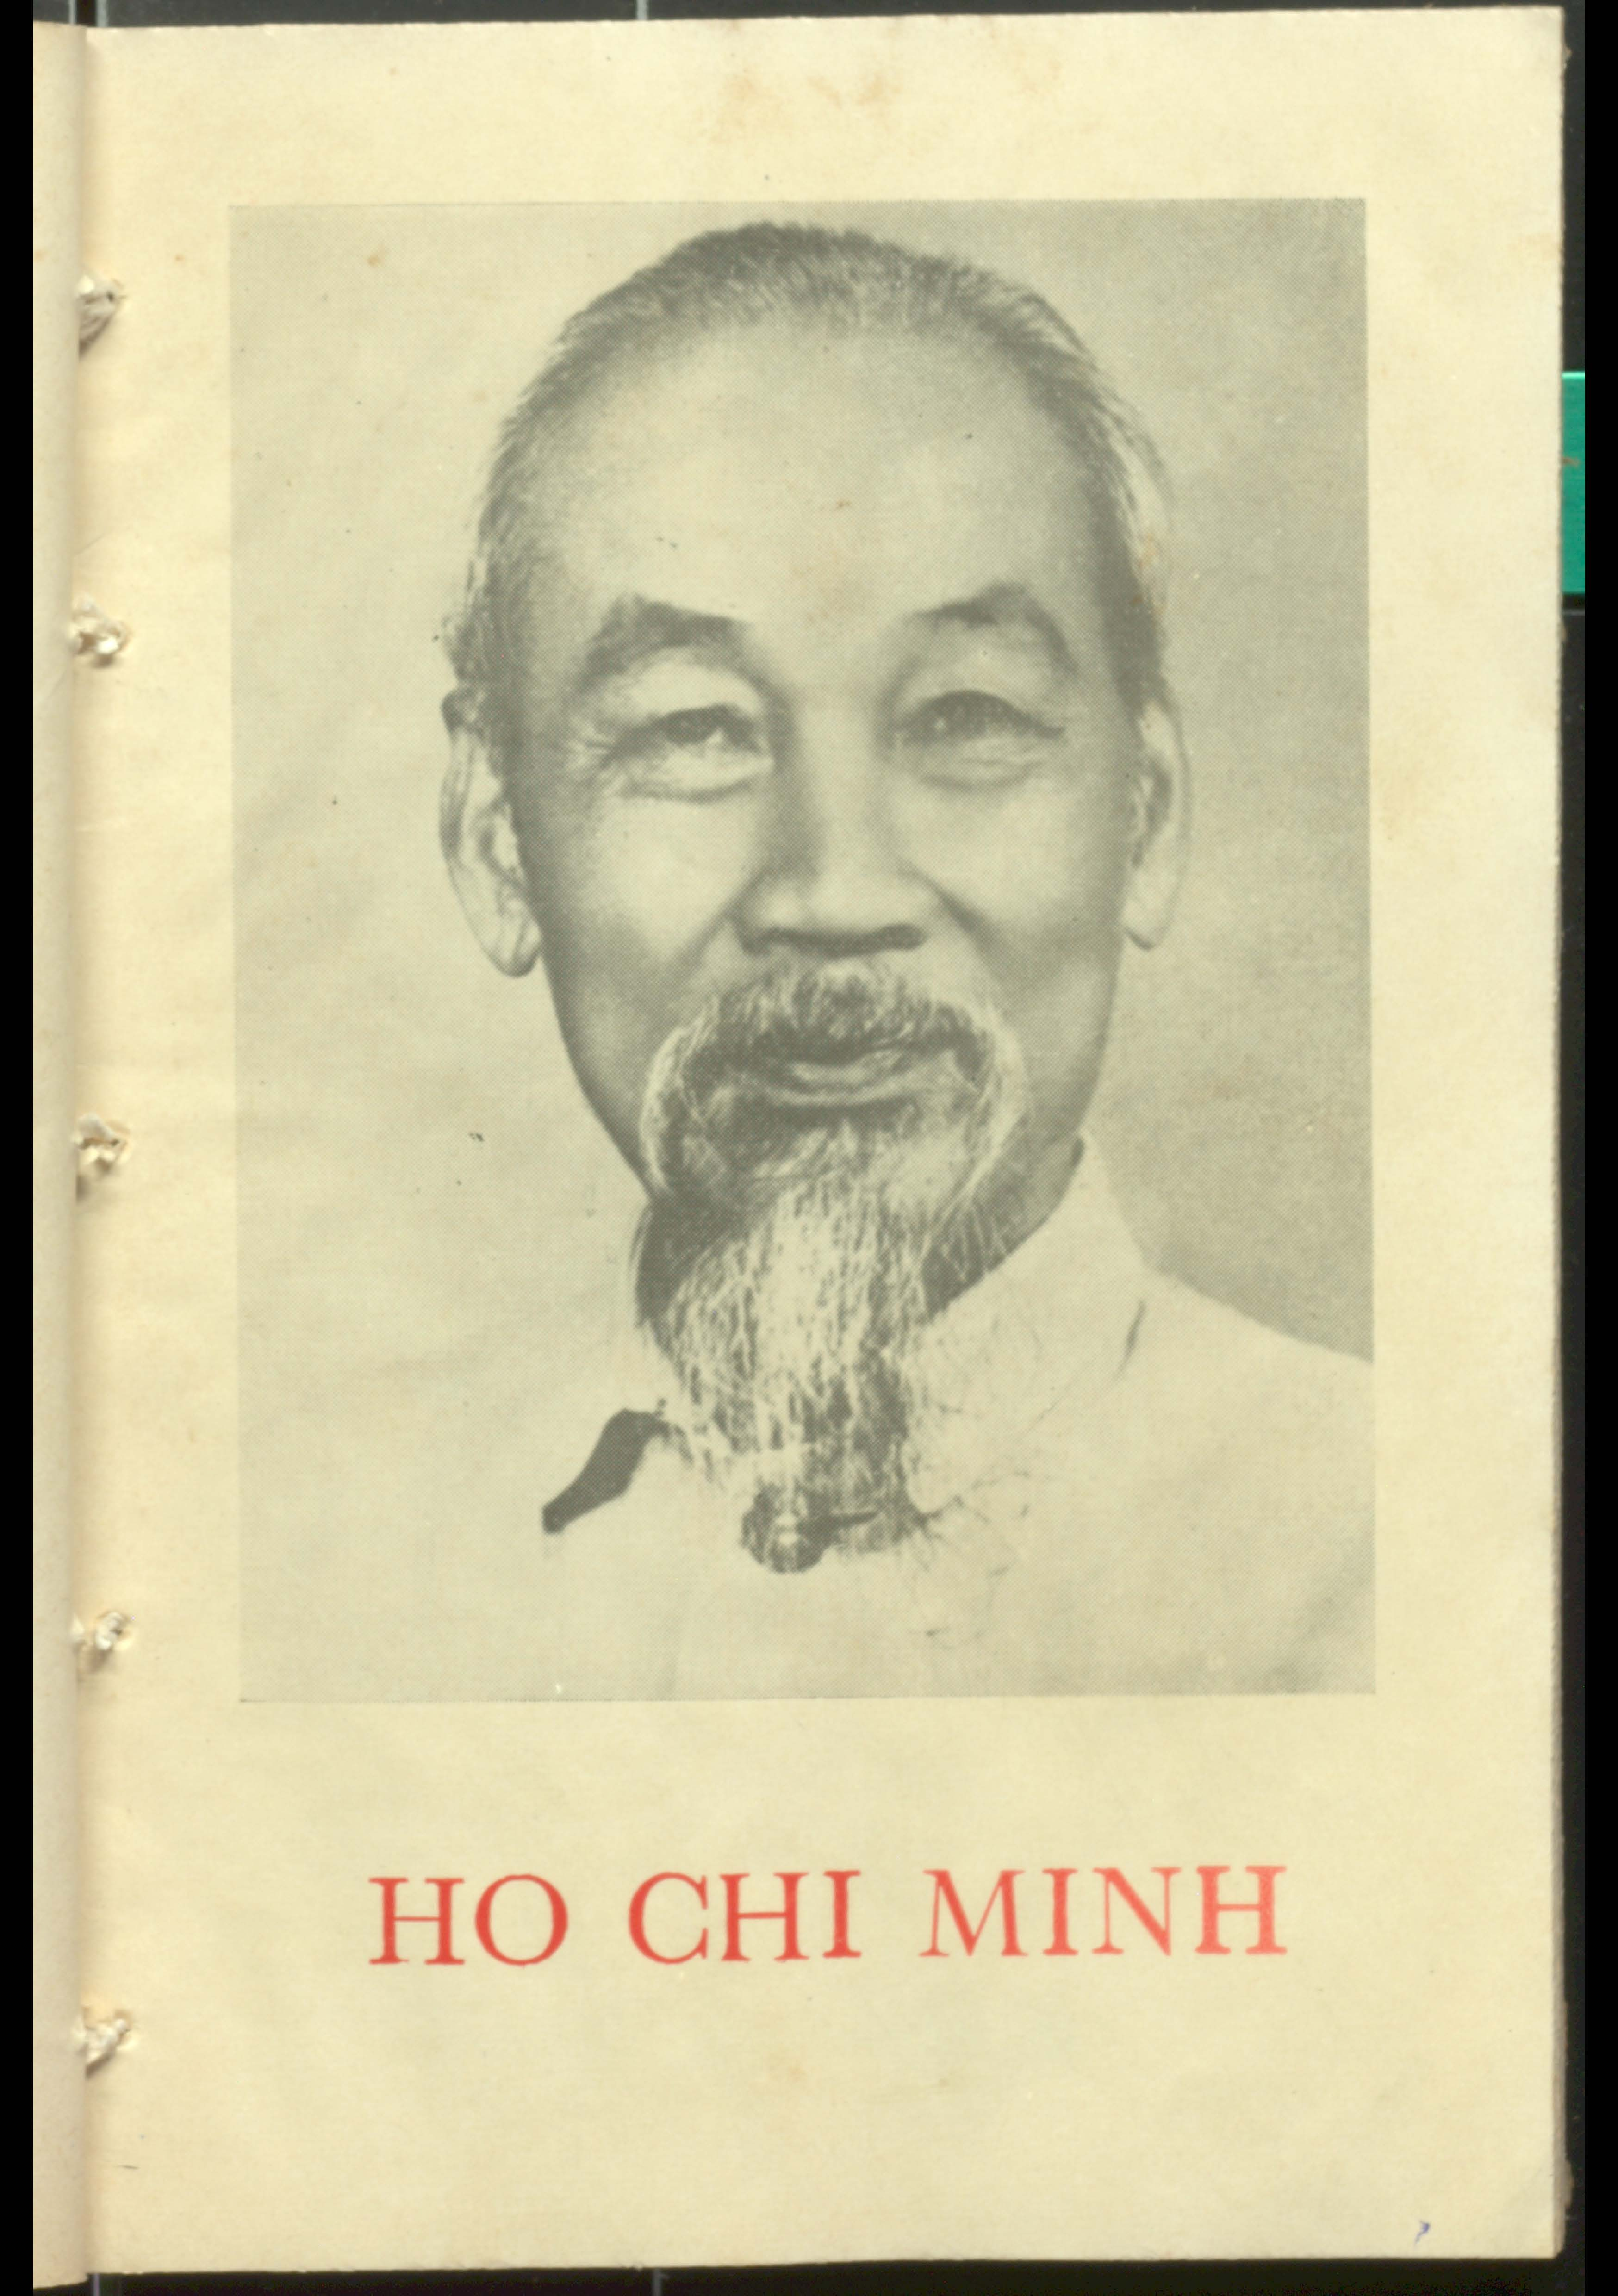 HO CHI MINH communist party publication